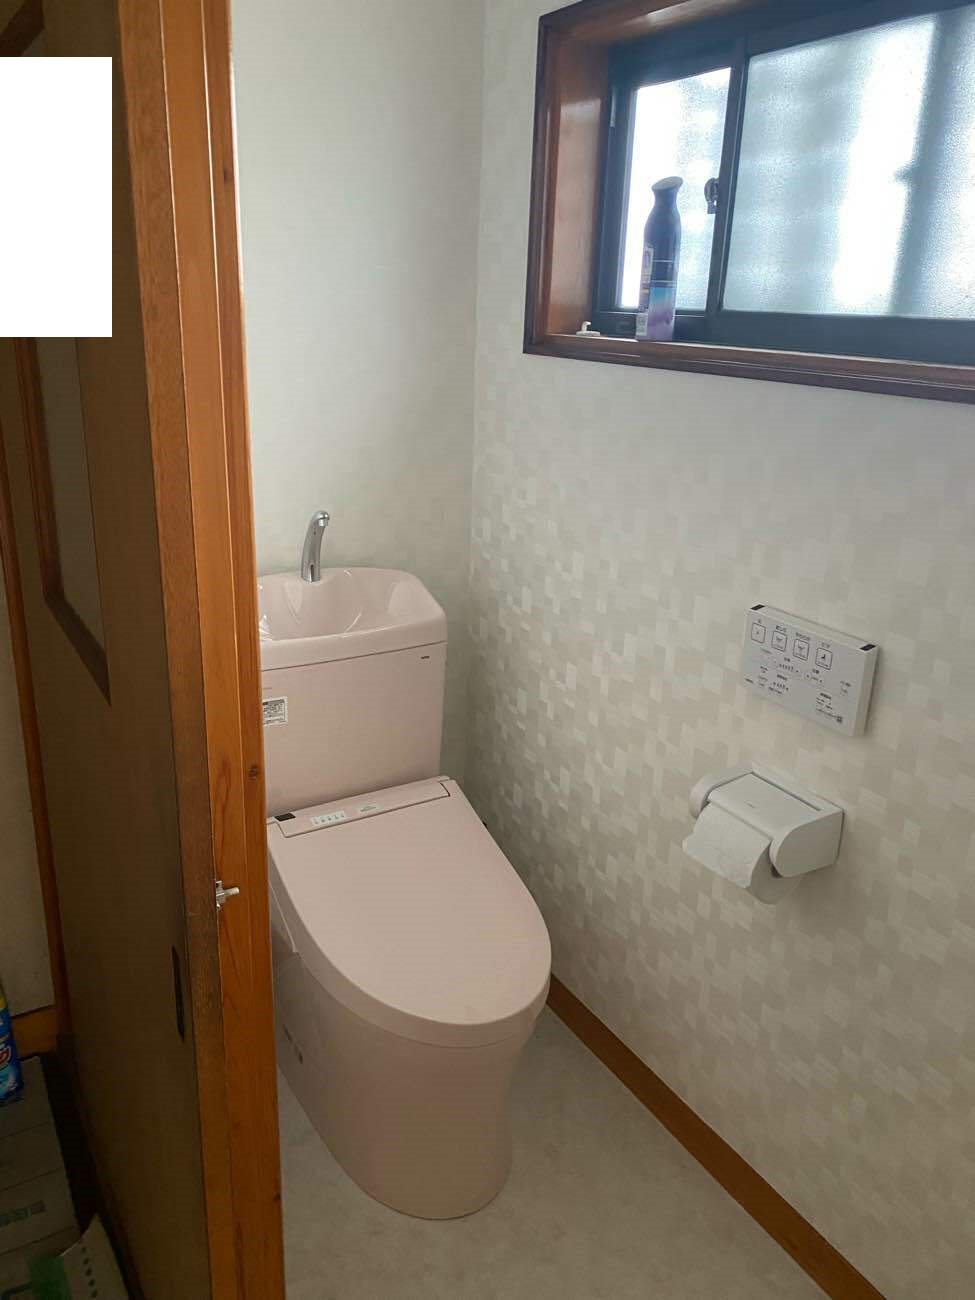 【埼玉県三郷市】S様邸トイレ交換工事が完了しました。TOTOピュアレストQR 画像